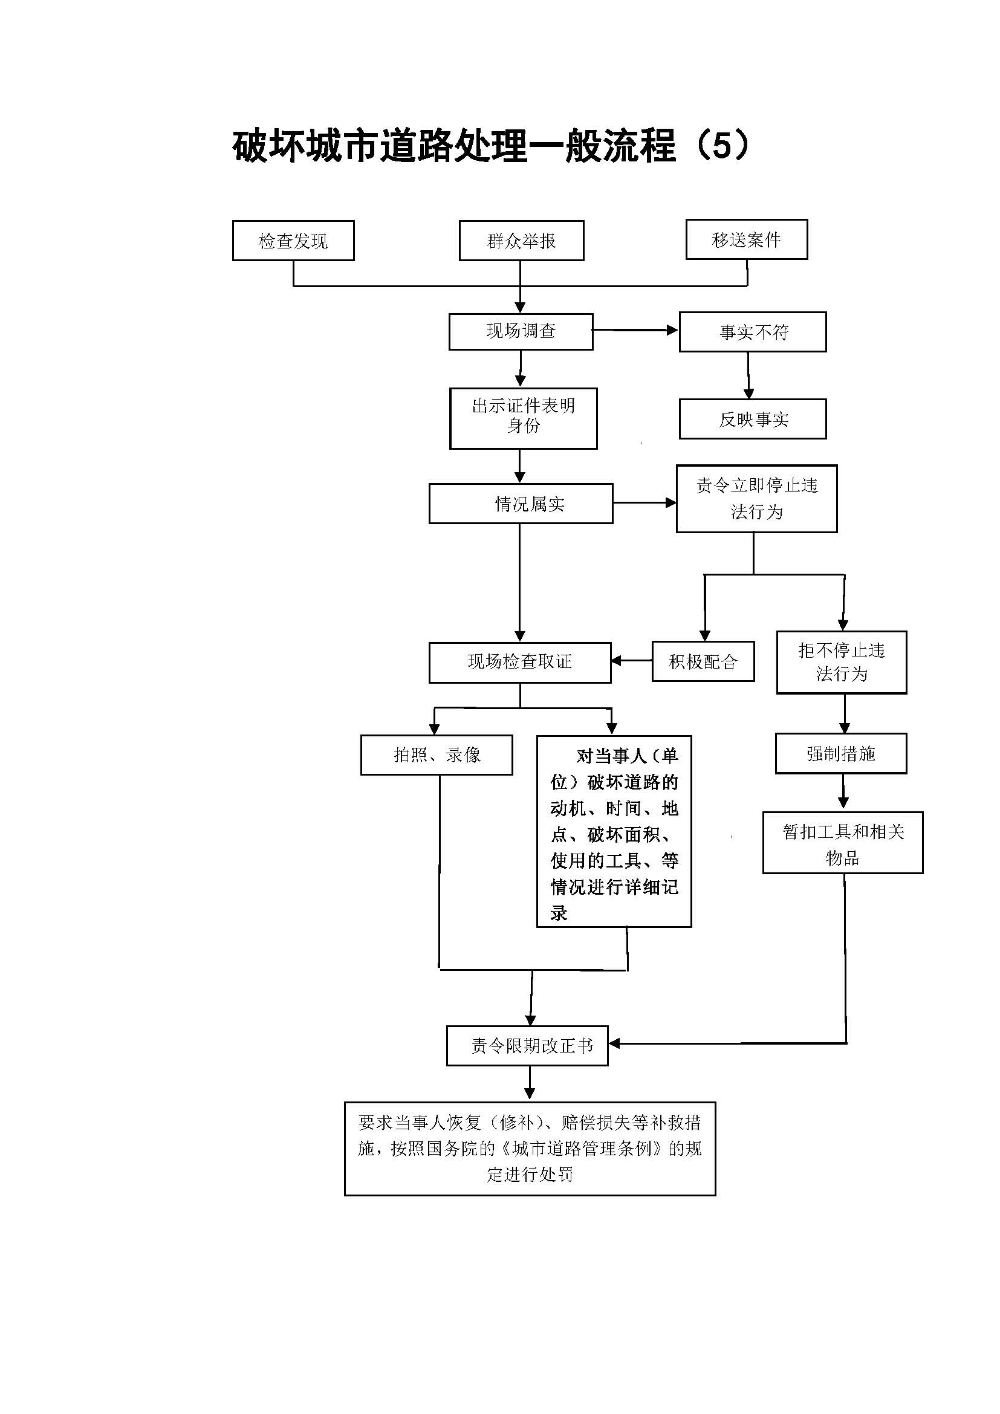 台山市城市管理和综合执法局行政处罚流程_页面_7.jpg